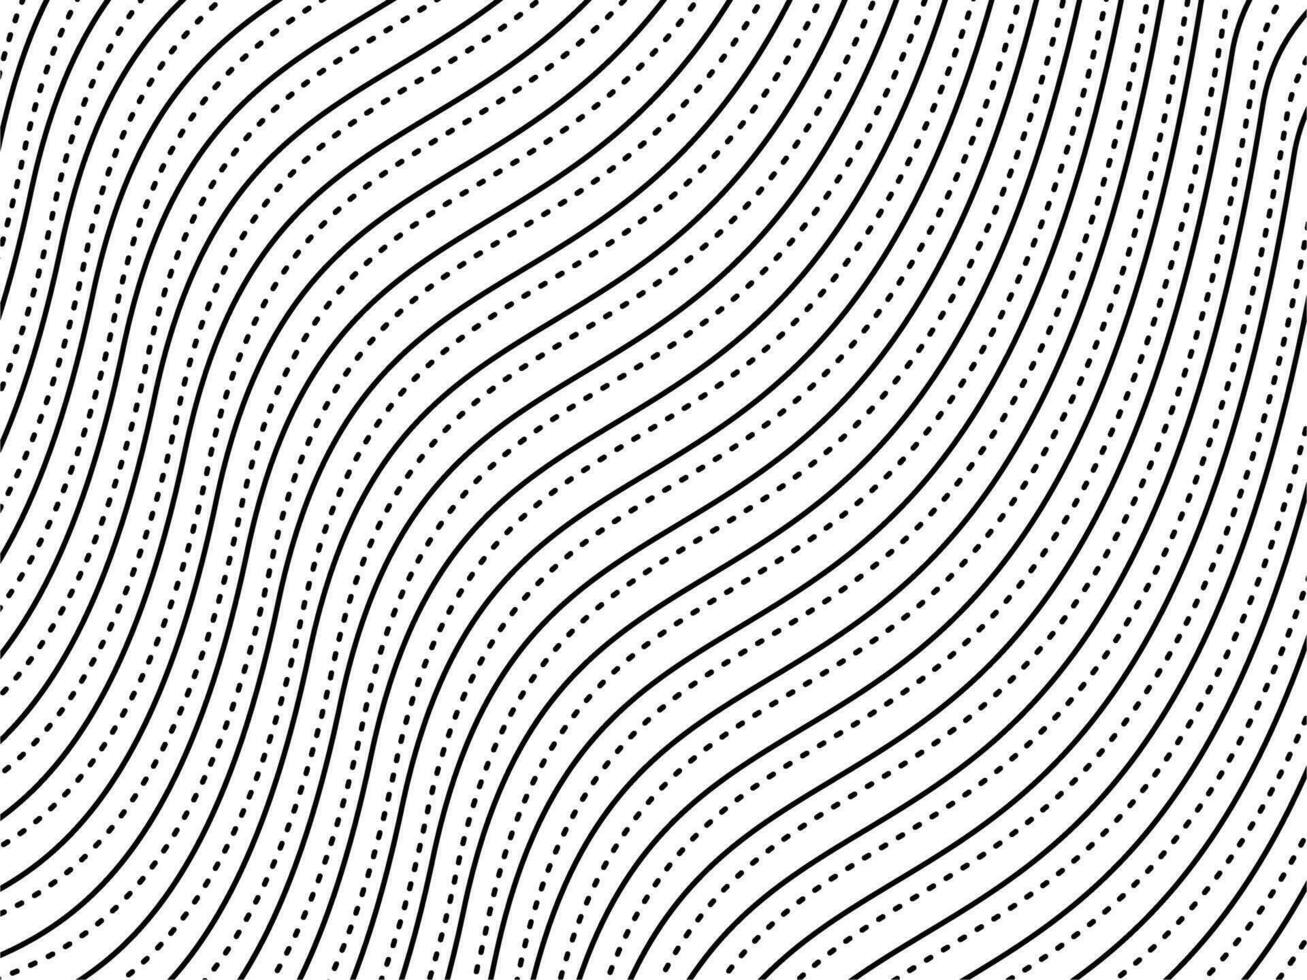 optisch illusie gemaakt van artistiek lijnen motieven patroon, kan gebruik voor decoratie, achtergrond, overladen, kleding stof, mode, textiel, tapijt patroon, tegel of grafisch ontwerp element. vector illustratie